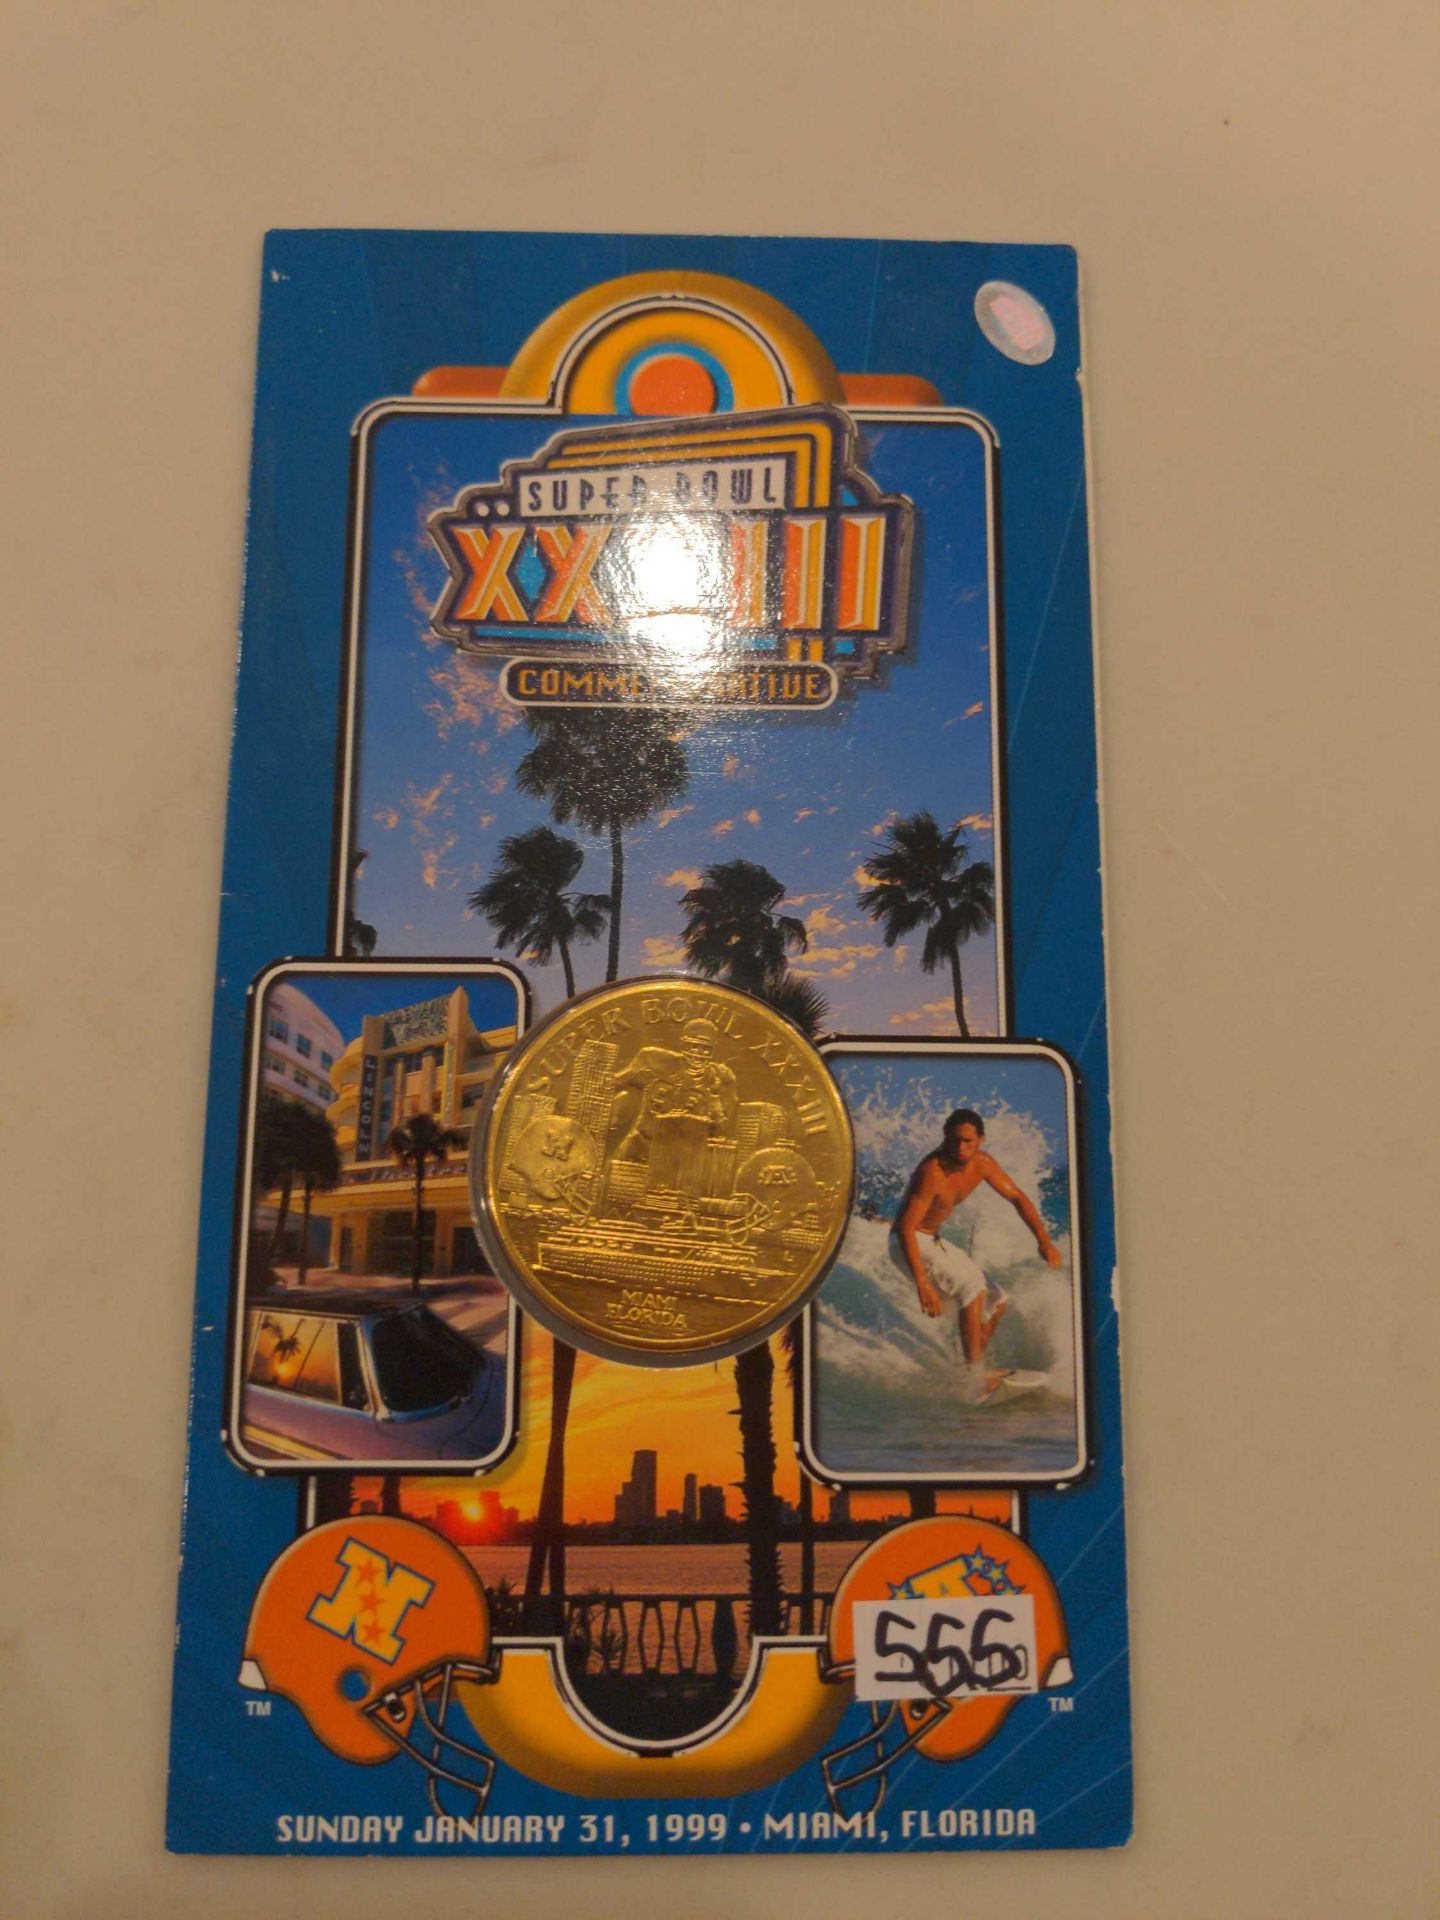 2 Commemorative Super Bowl Coins, Atlanta 1994 and Miami 1999 - Image 4 of 6